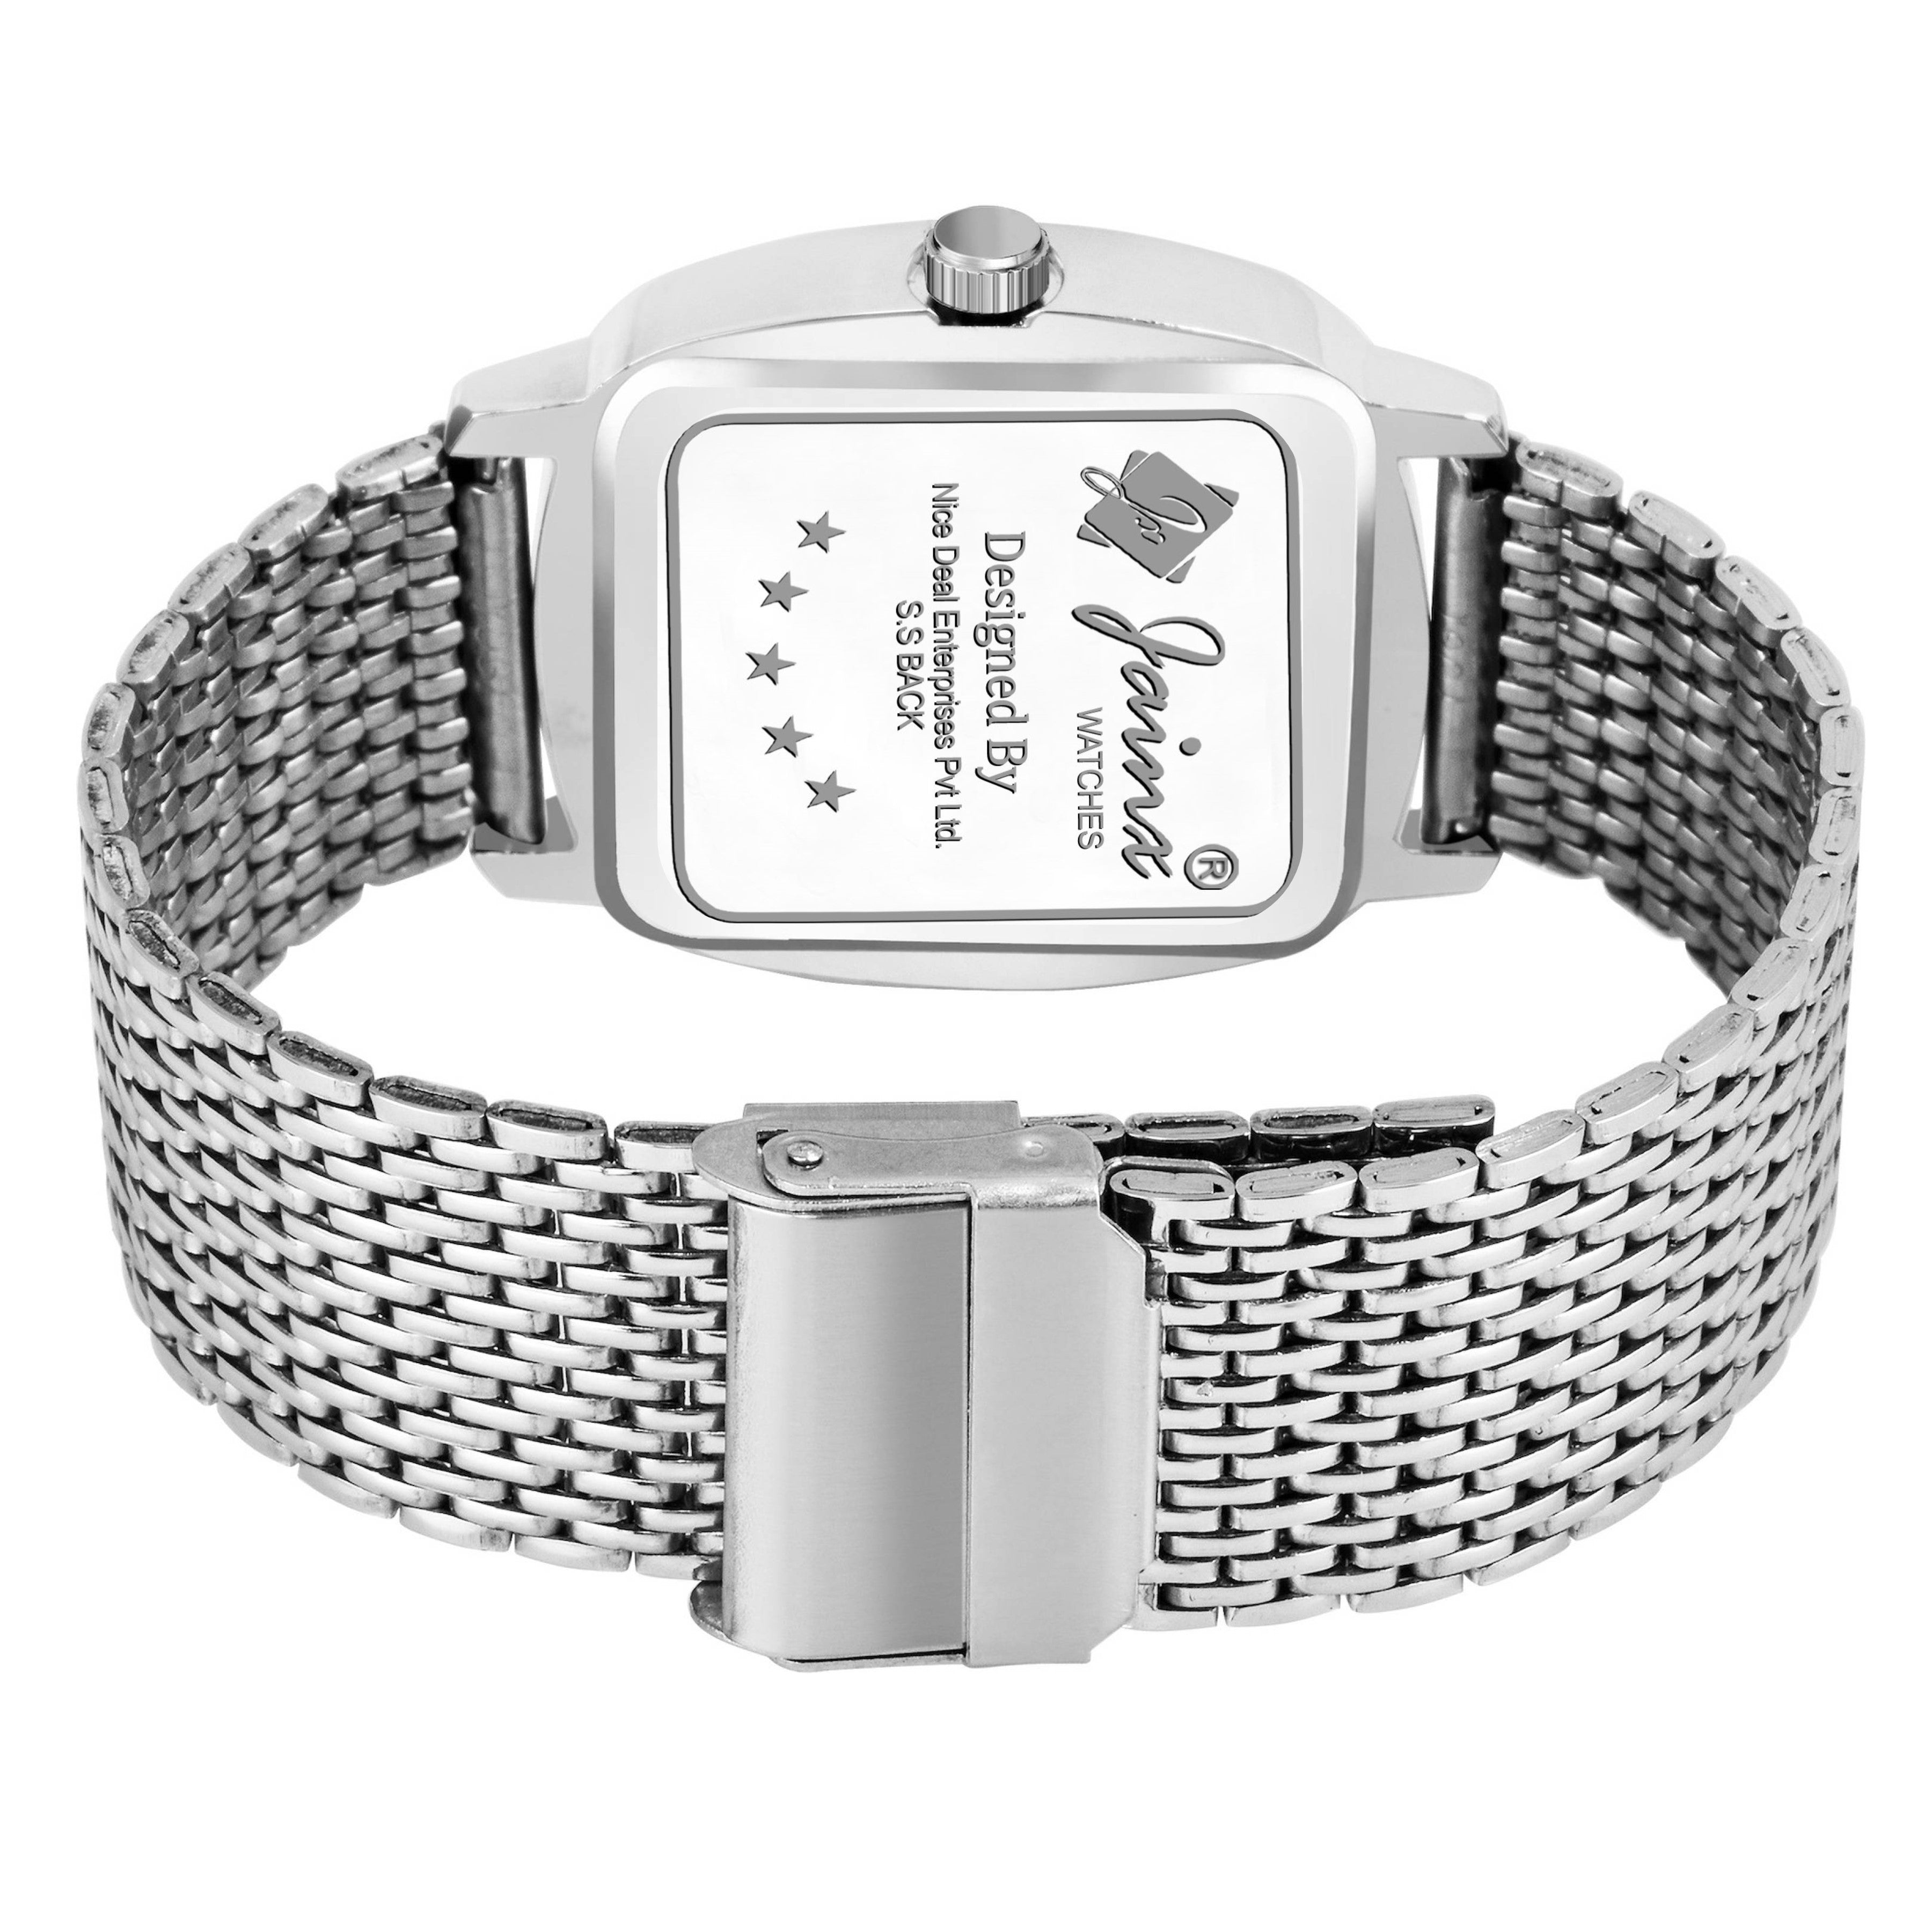 Jainx Silver Dial Steel Chain Analog Wrist Watch for Men - JM7159 - Jainx Store